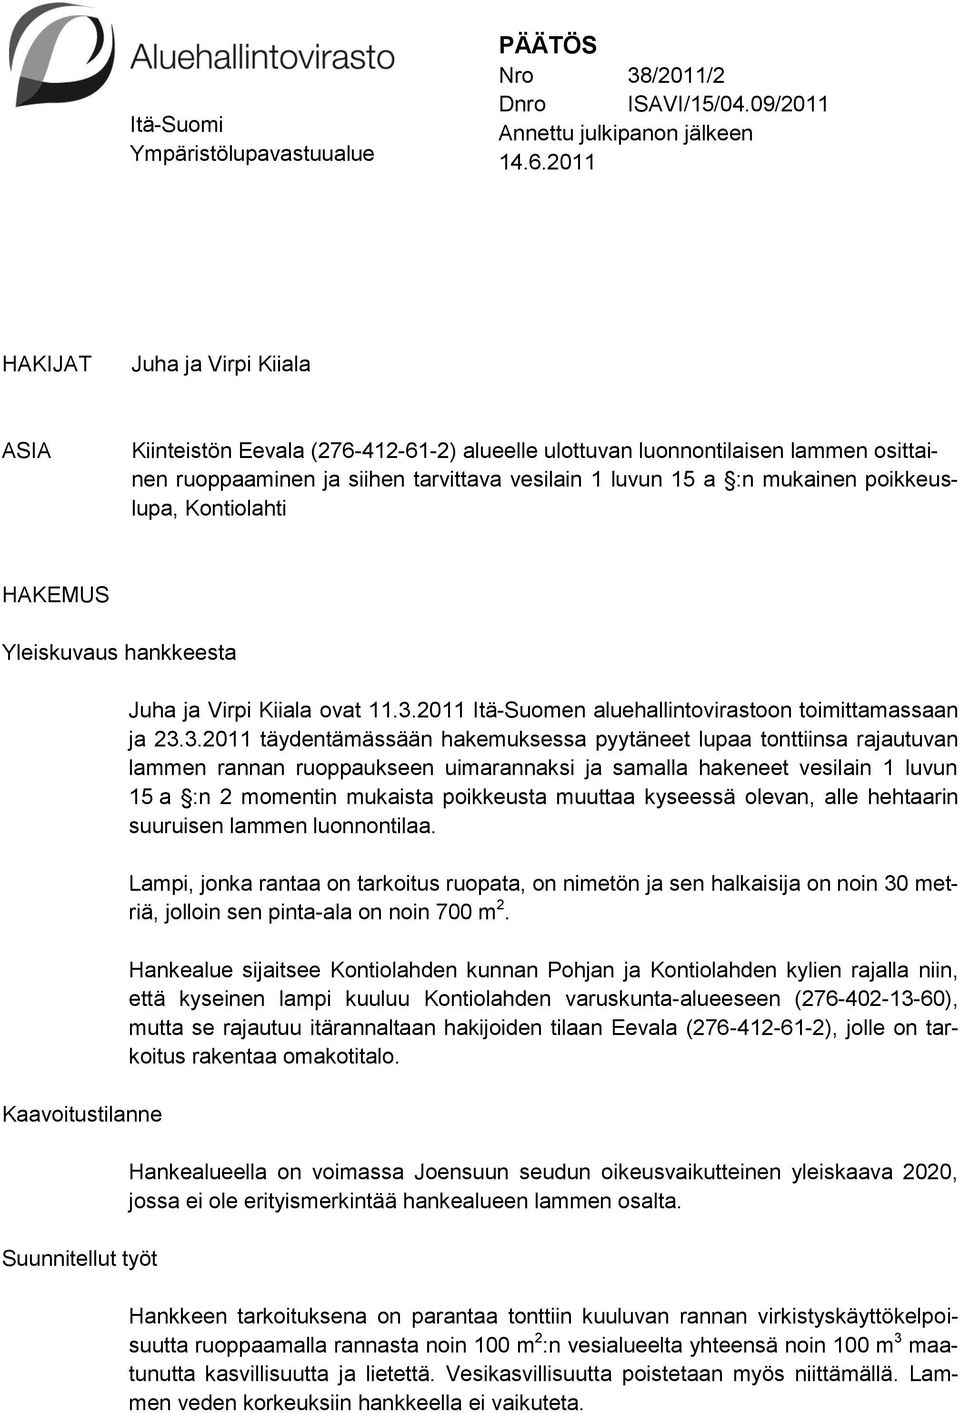 poikkeuslupa, Kontiolahti HAKEMUS Yleiskuvaus hankkeesta Kaavoitustilanne Suunnitellut työt Juha ja Virpi Kiiala ovat 11.3.